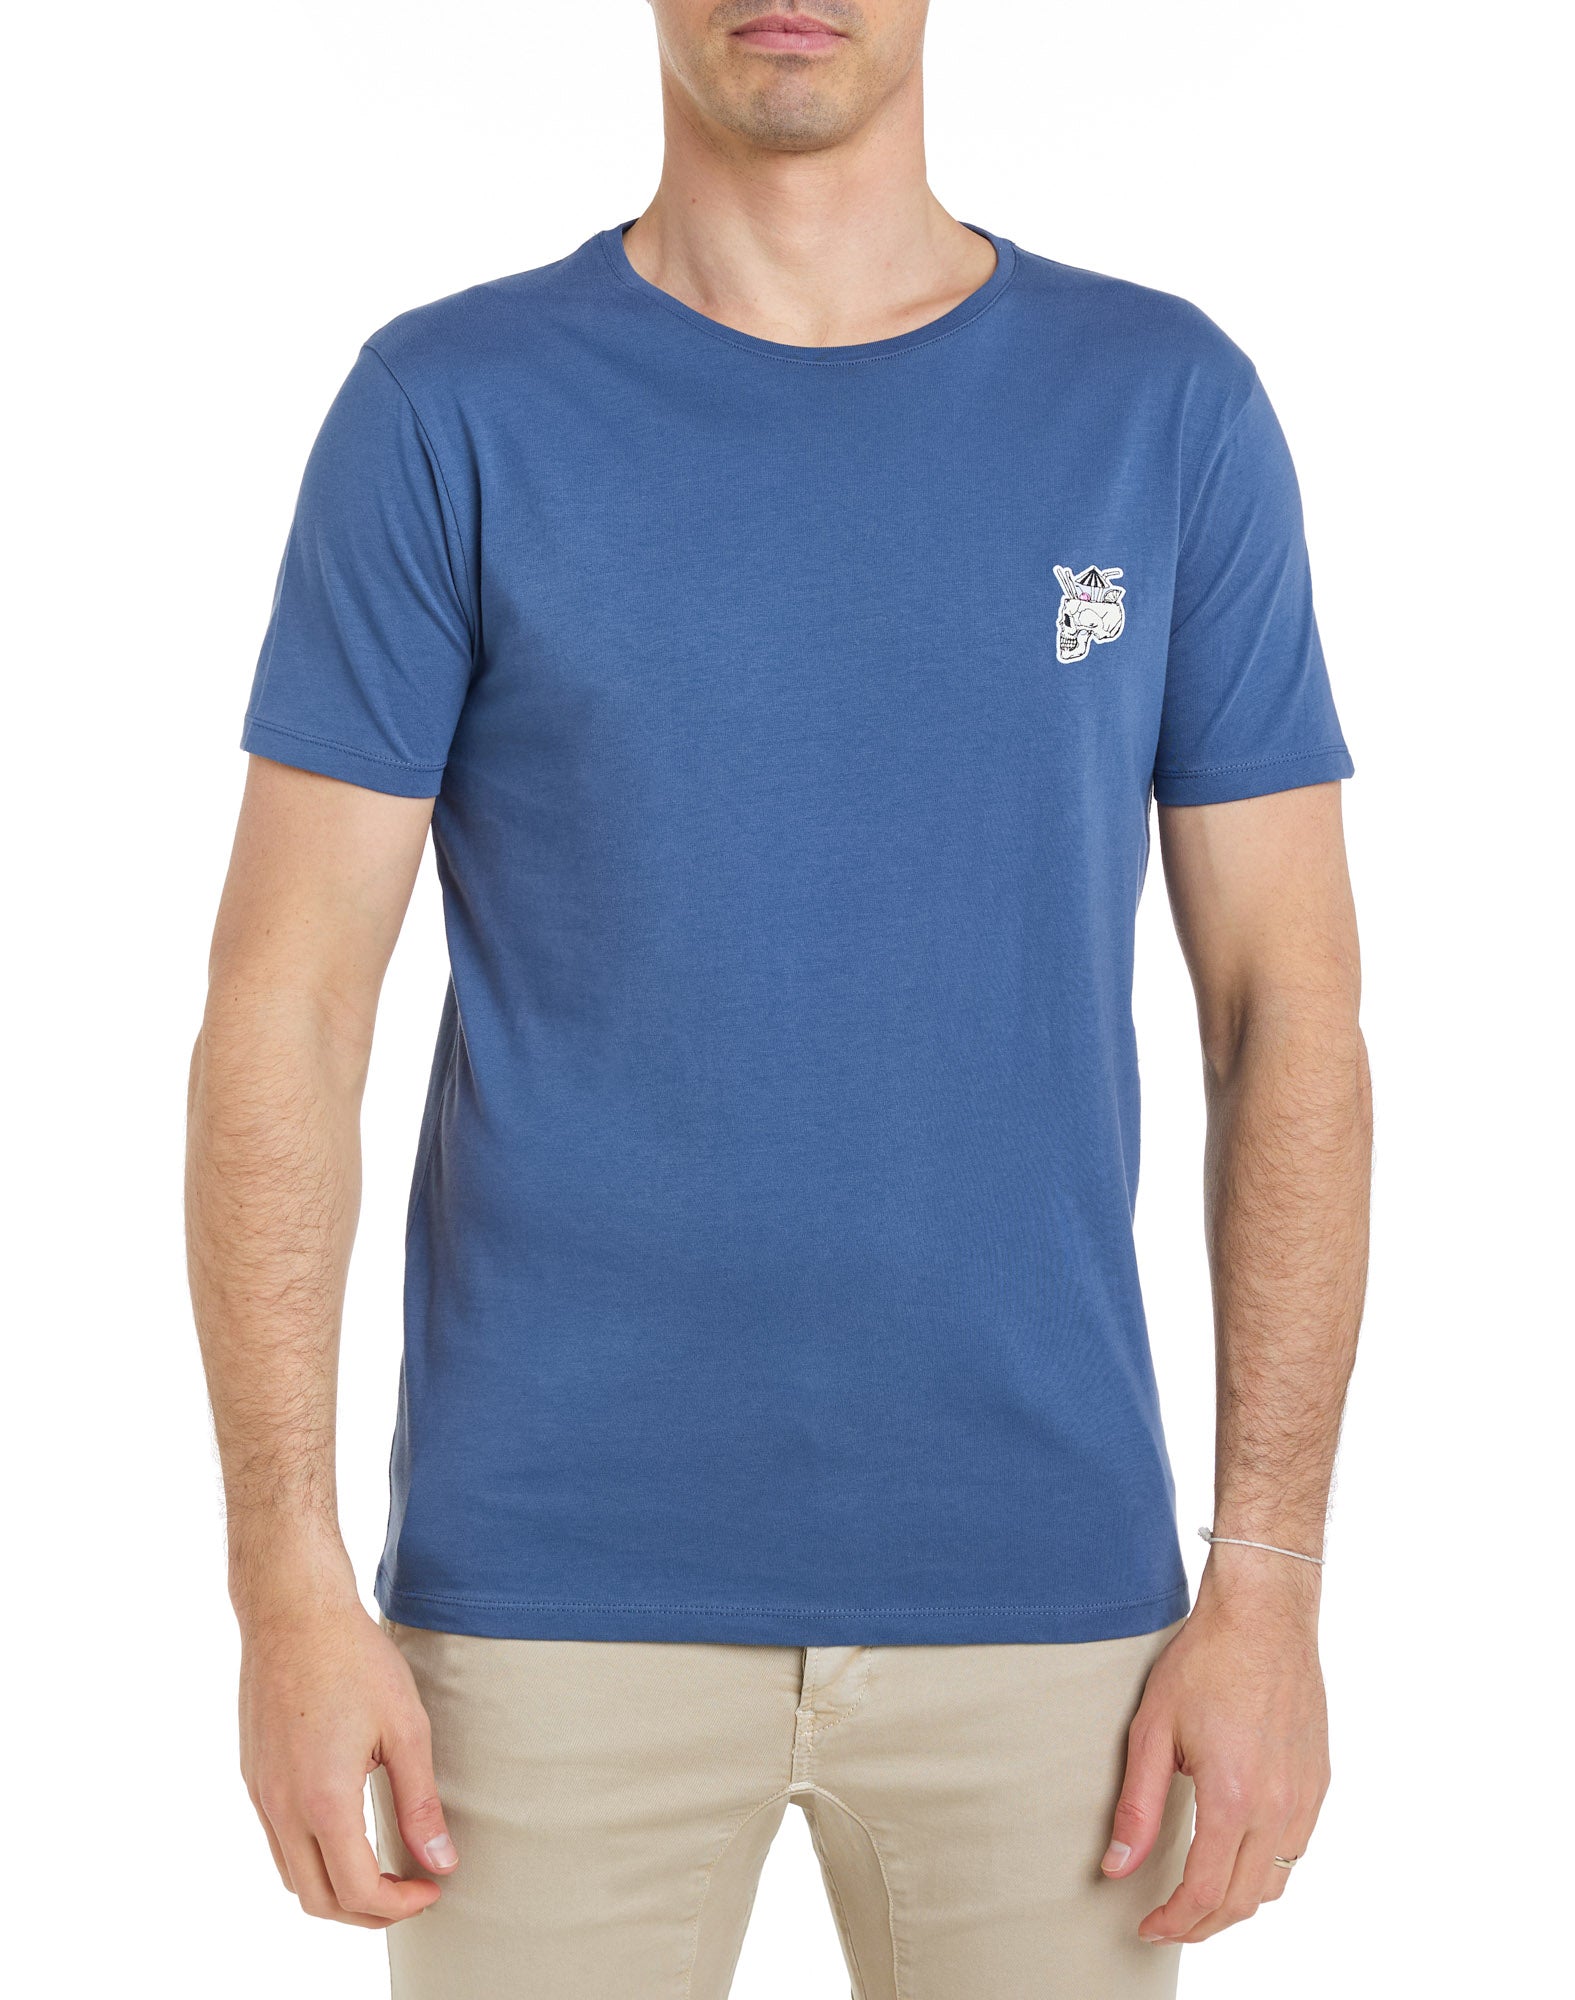 Patch Bonzai T-Shirt Blue